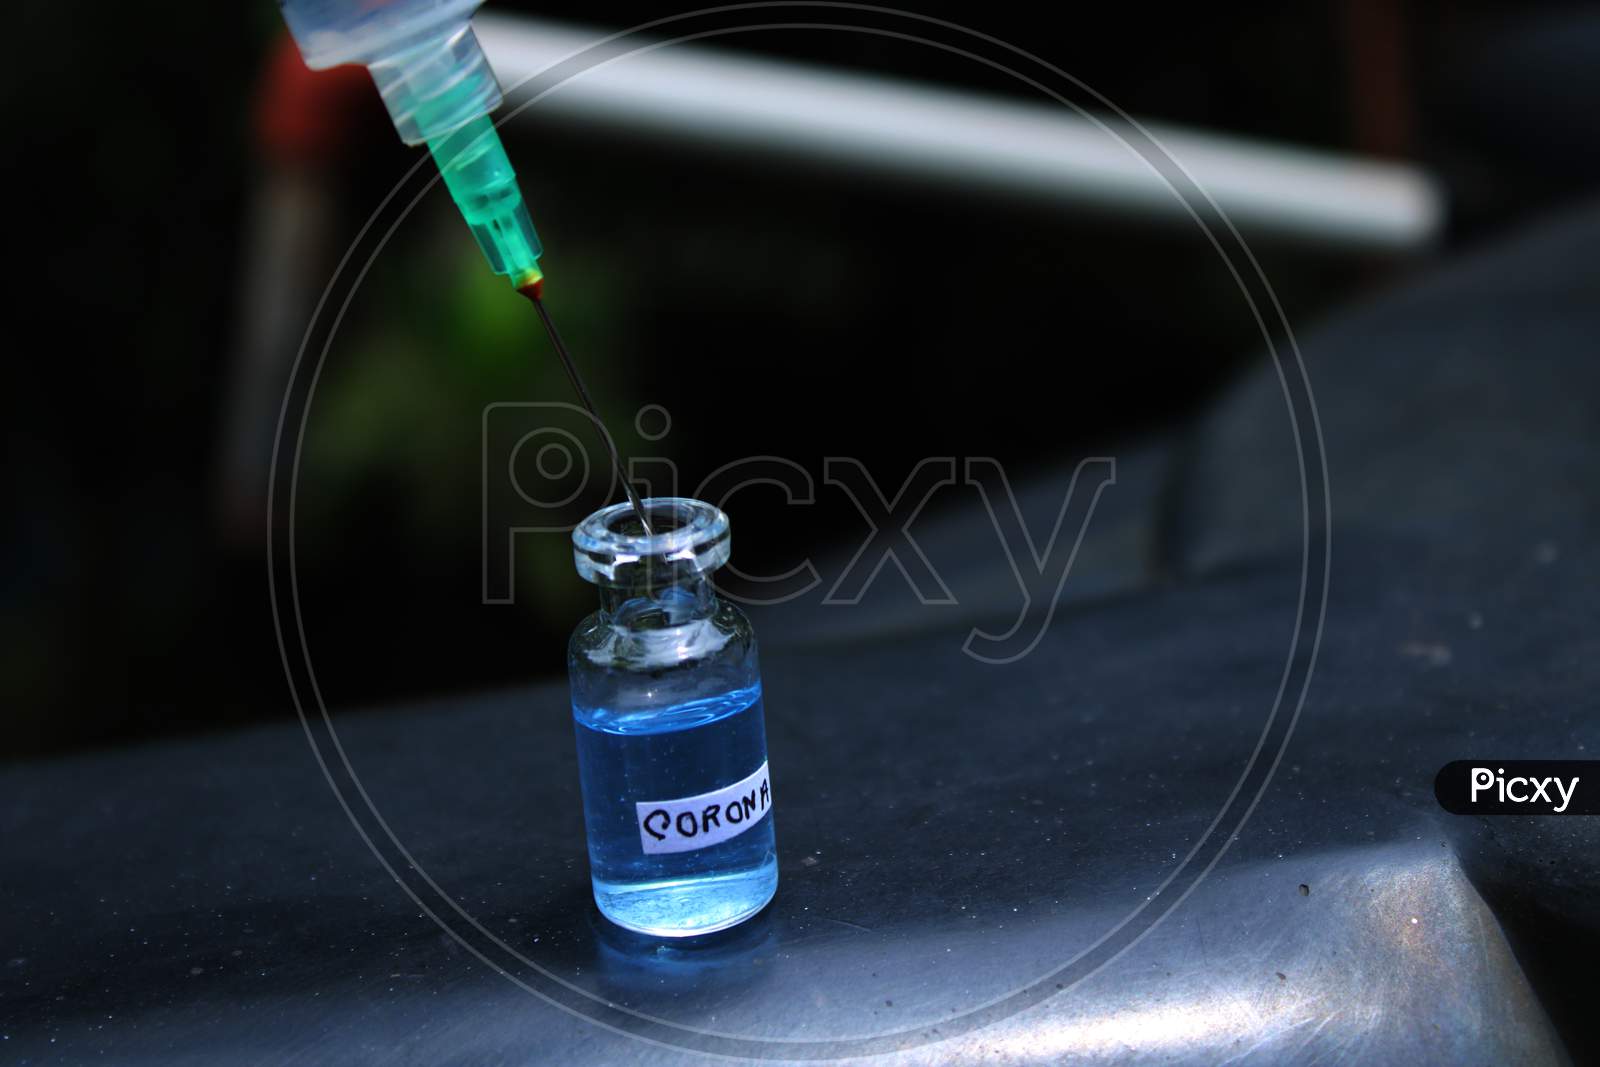 Disposable syringe and medicine bottle